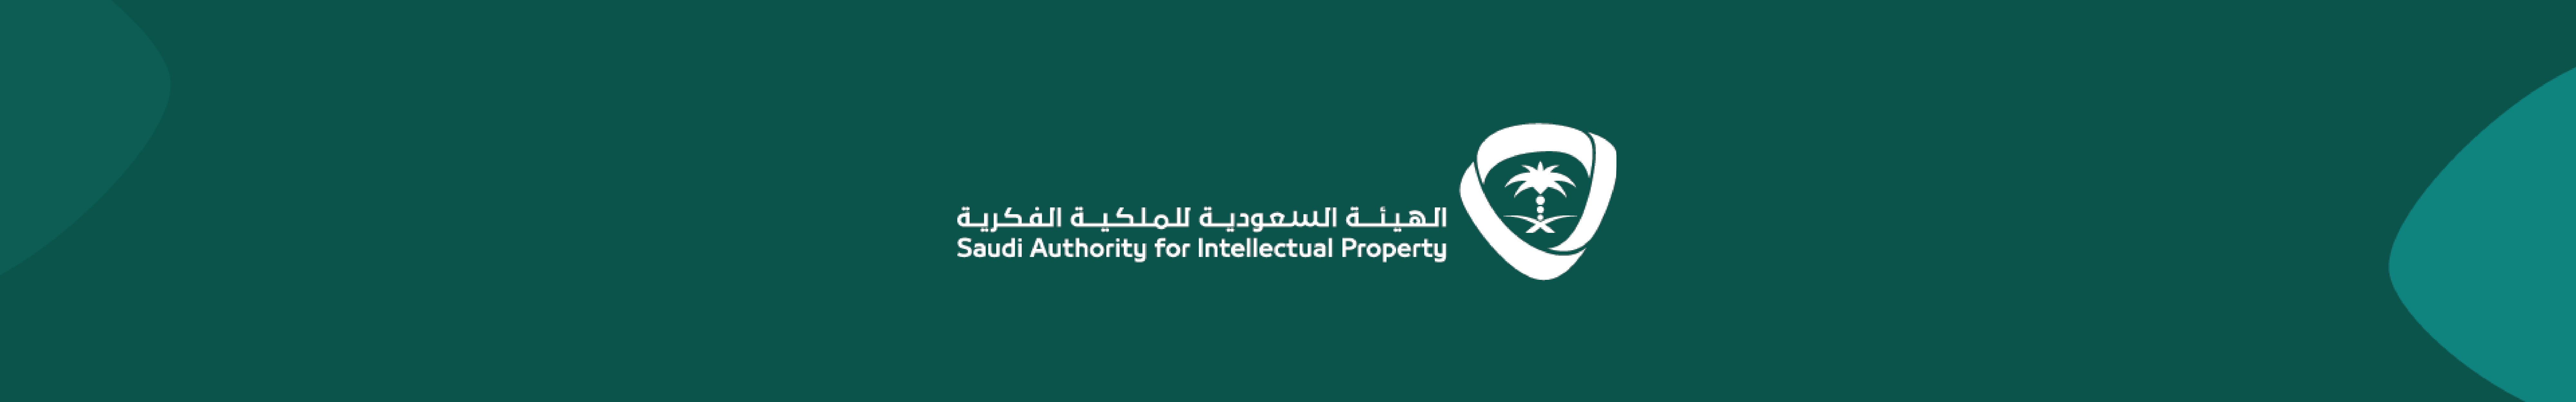 التسجيل في دورة الملكية الفكرية و براءة الاختراع بسوق العمل السعودي